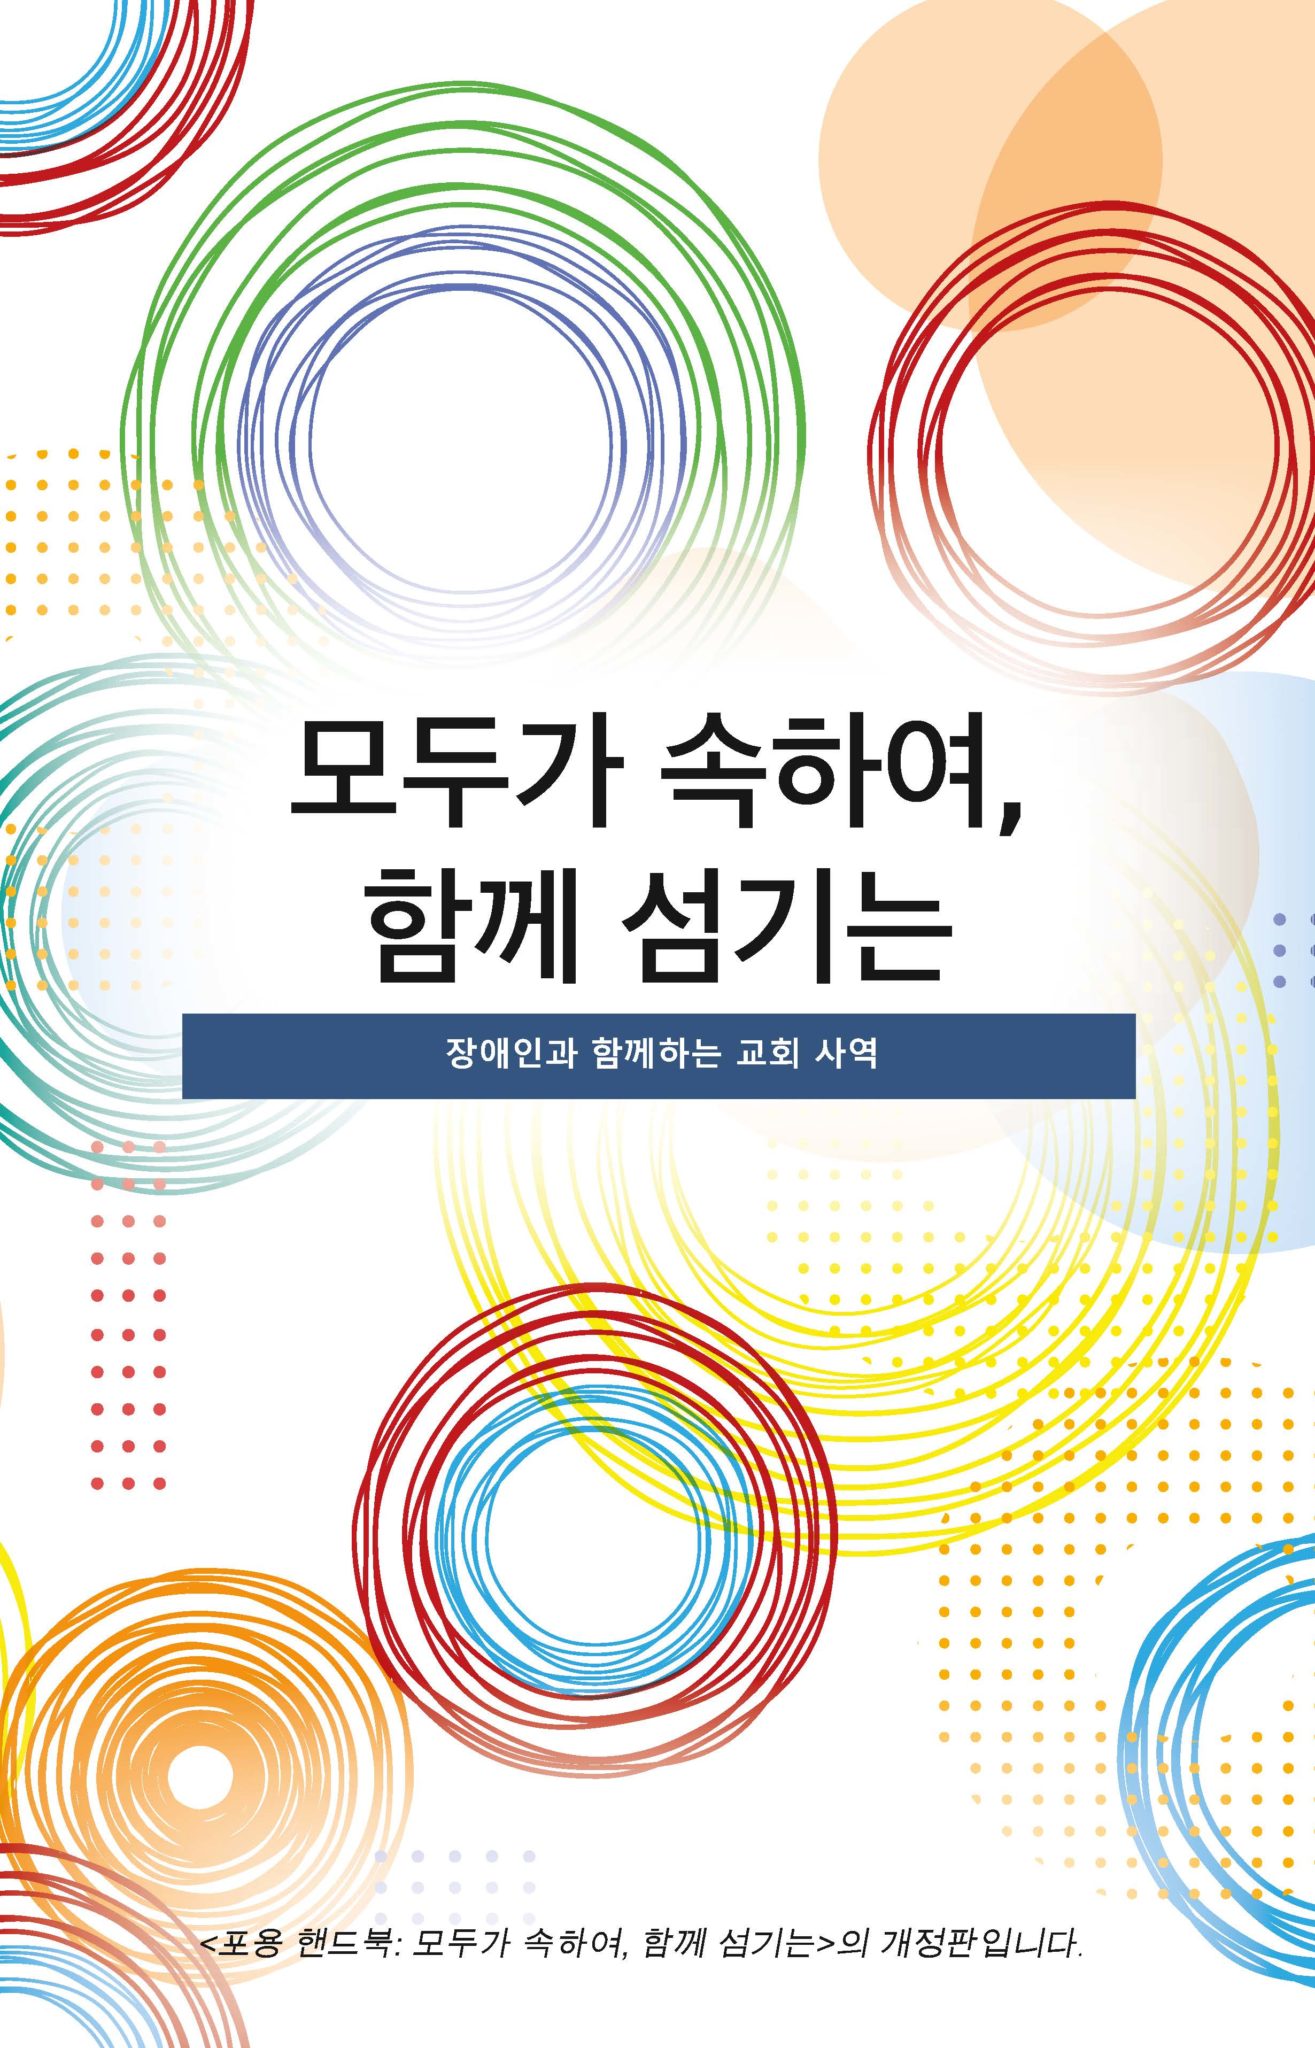 Everybody Belongs, Serving Together portada de la edición coreana